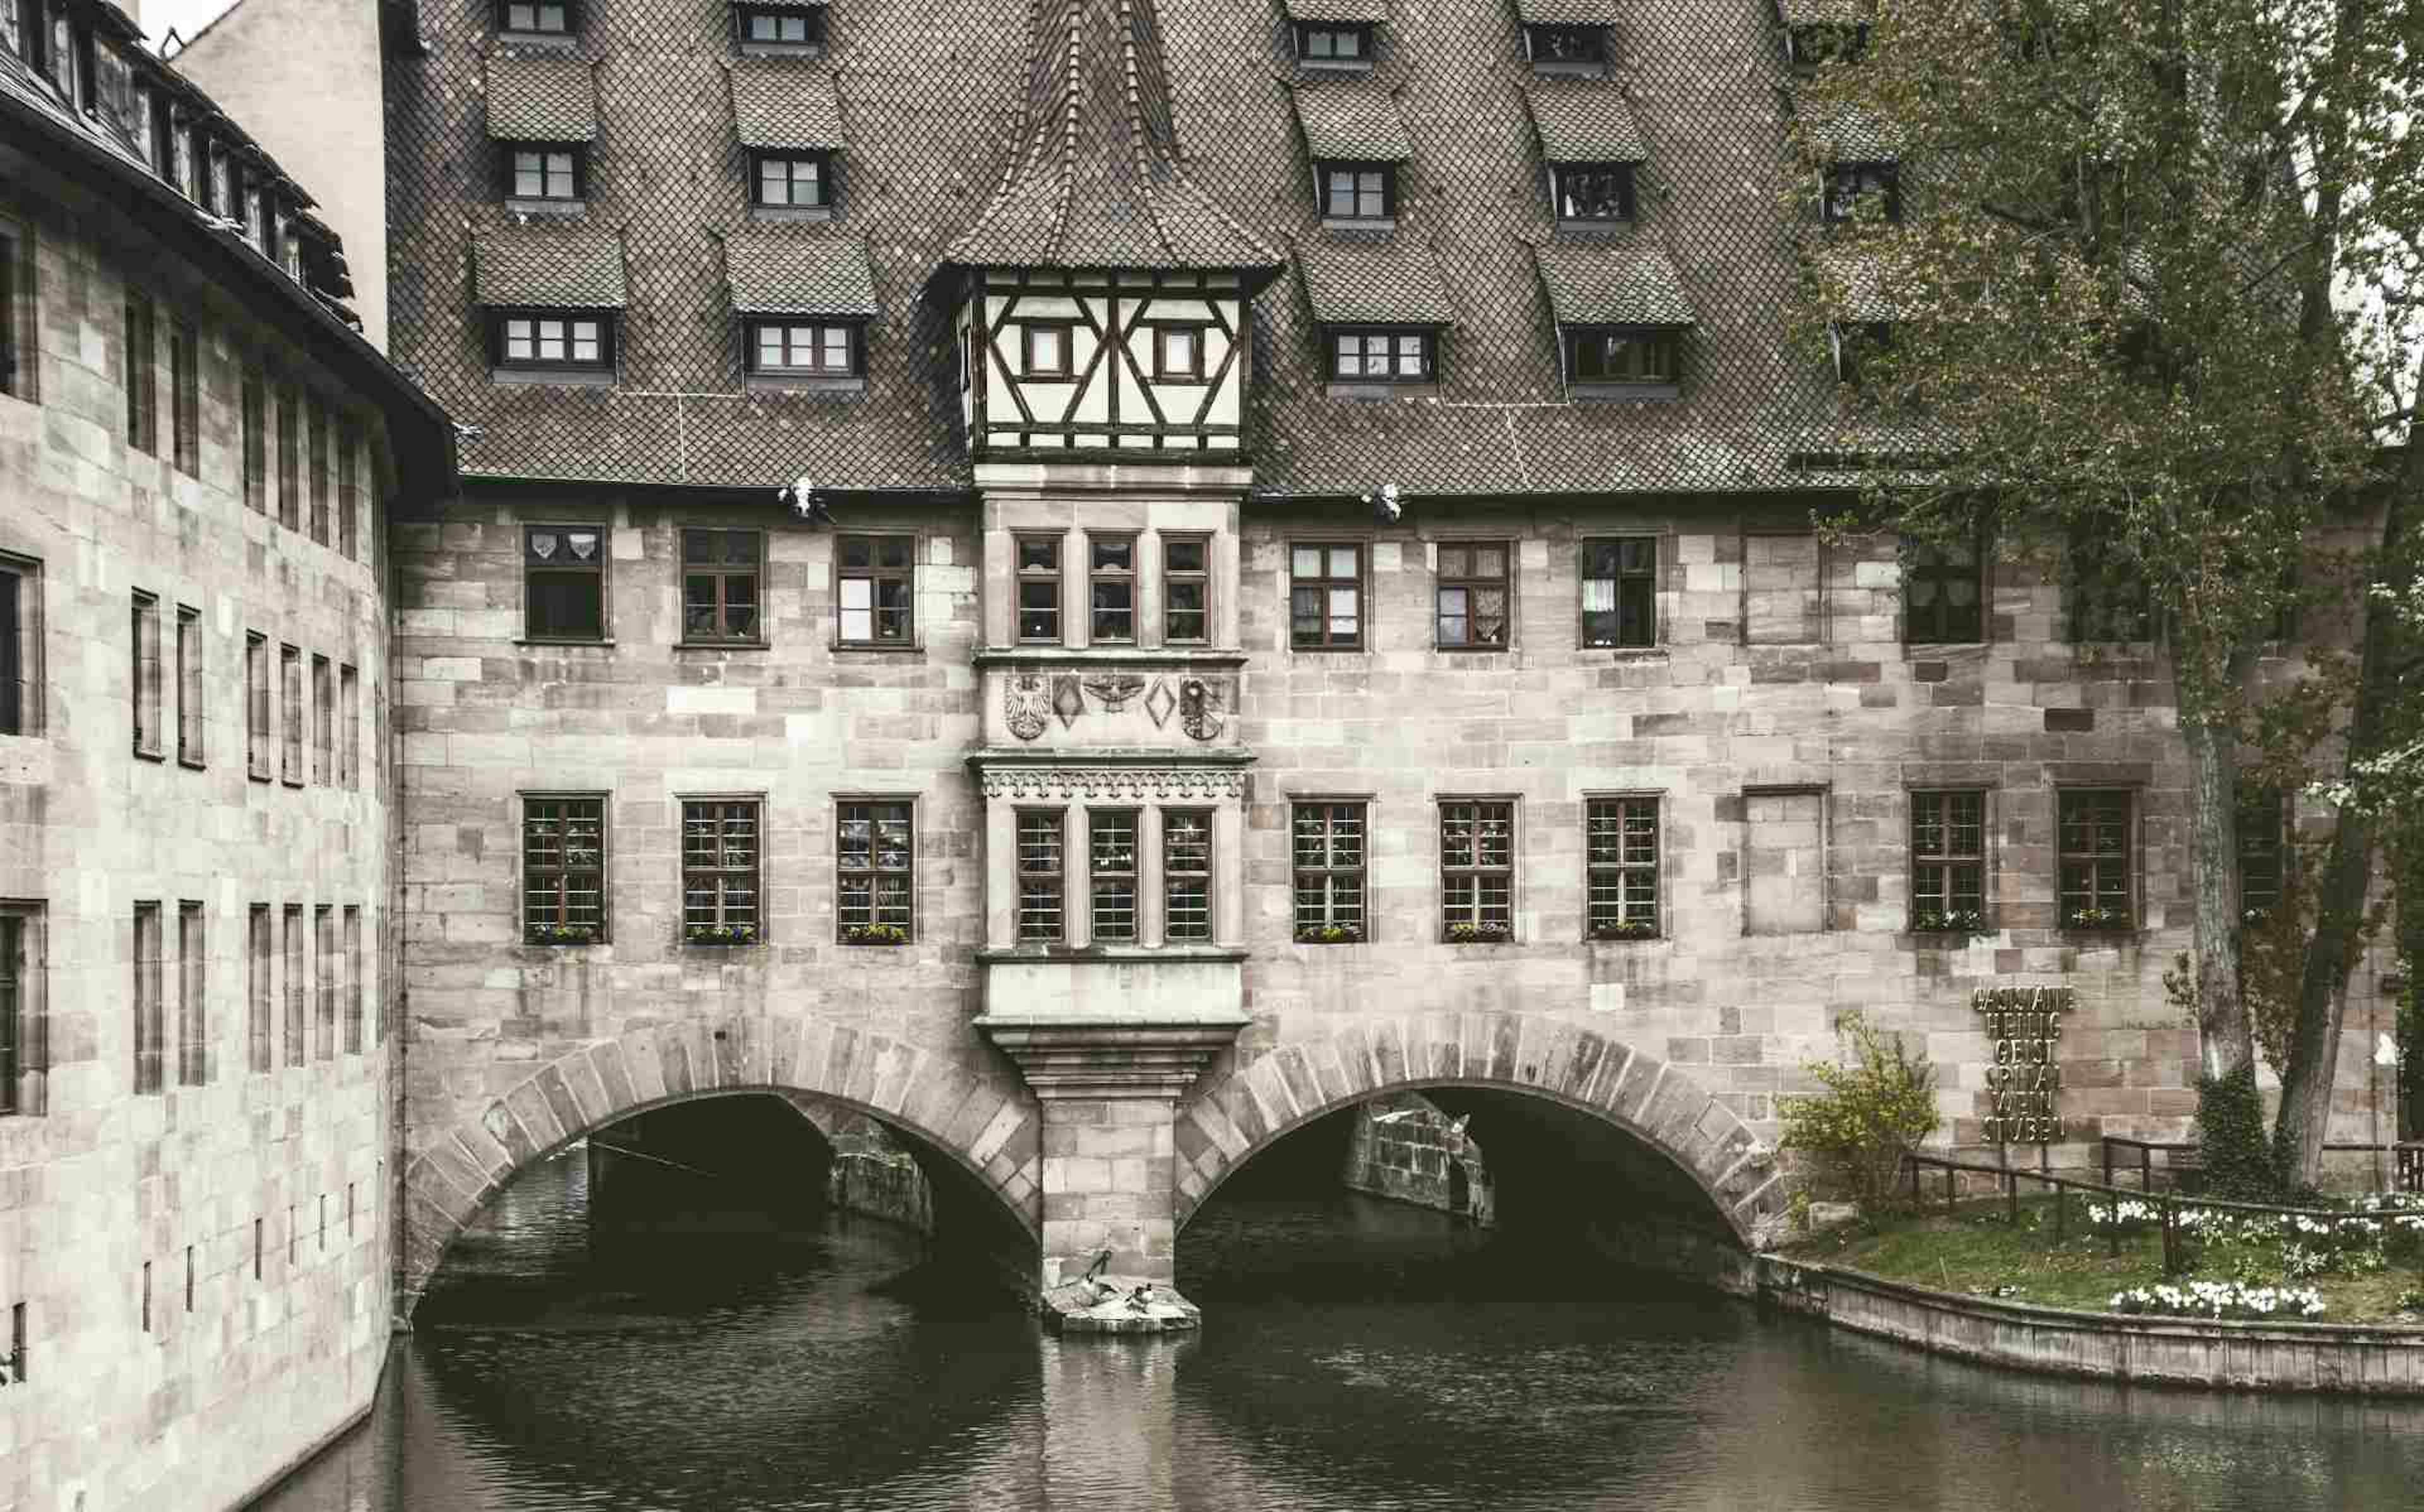 Nuremberg image